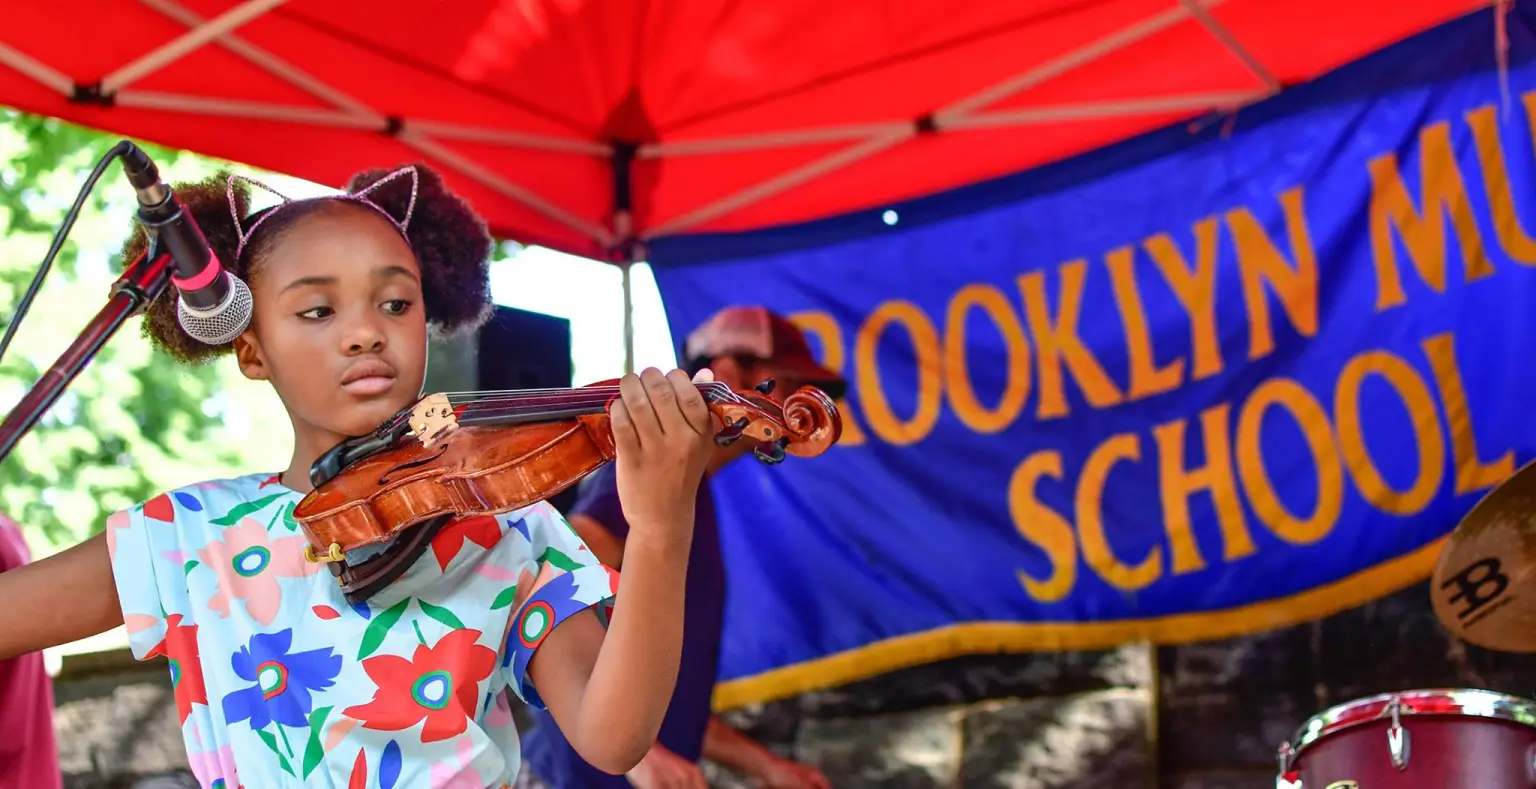 Brooklyn Music School may shut